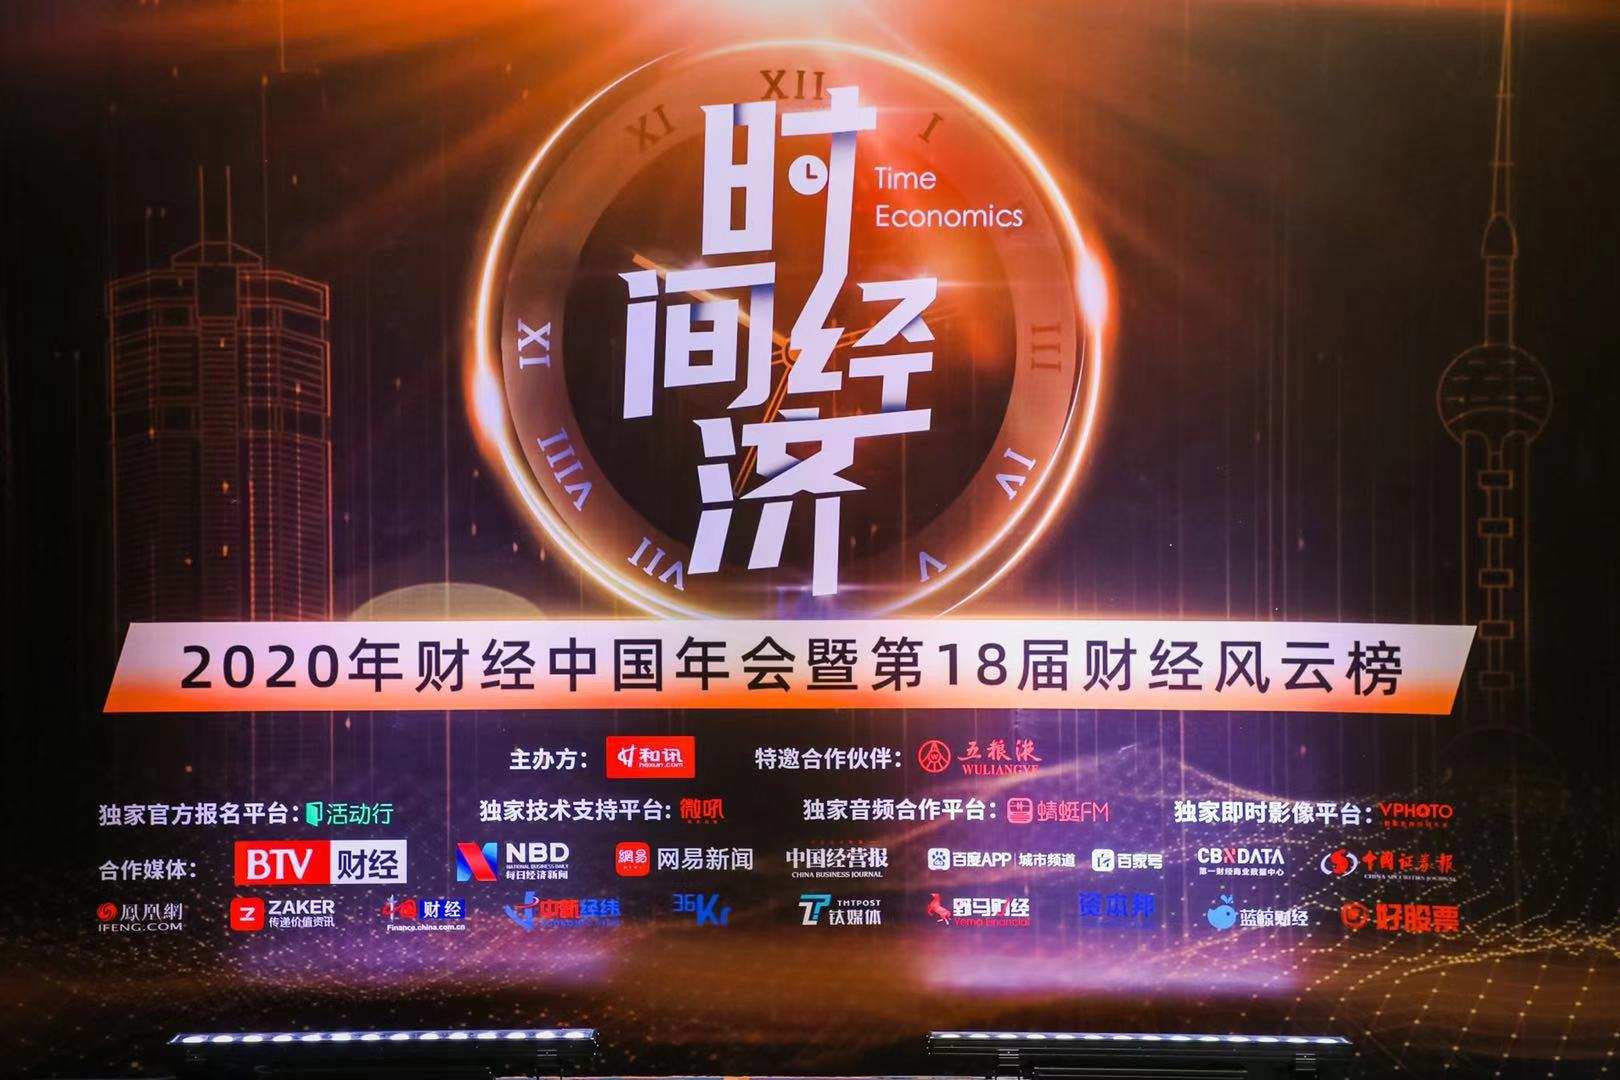 和讯“财经中国2020年会”在京举行 聚焦《时间经济》助力新时代